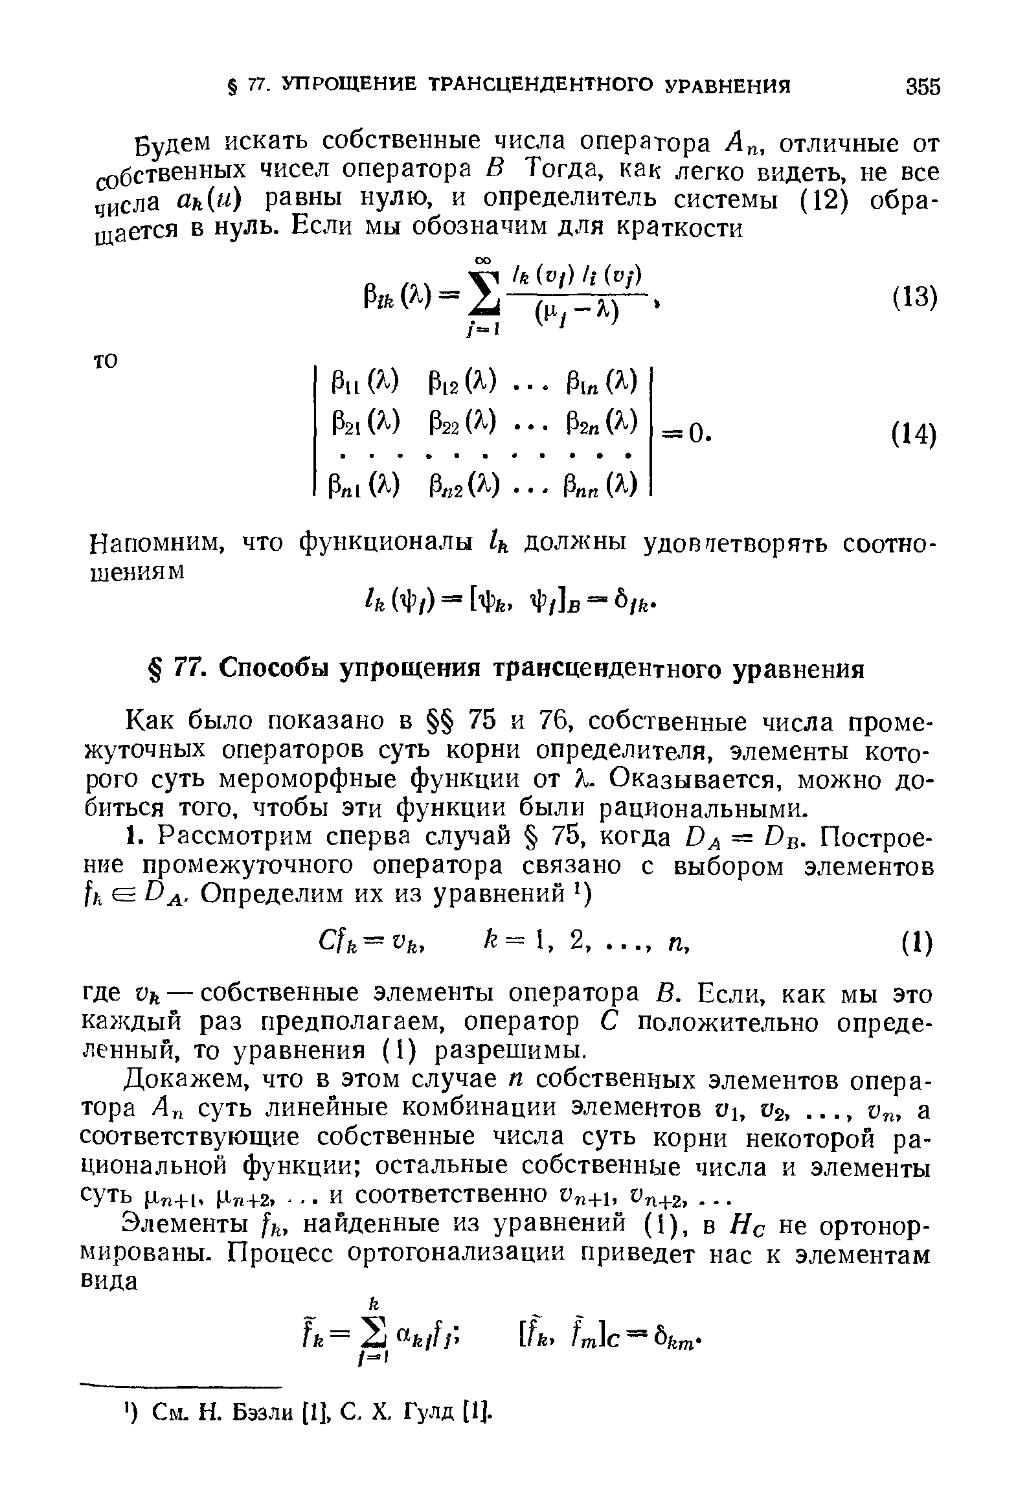 § 77. Способы упрощения трансцендентного уравнения